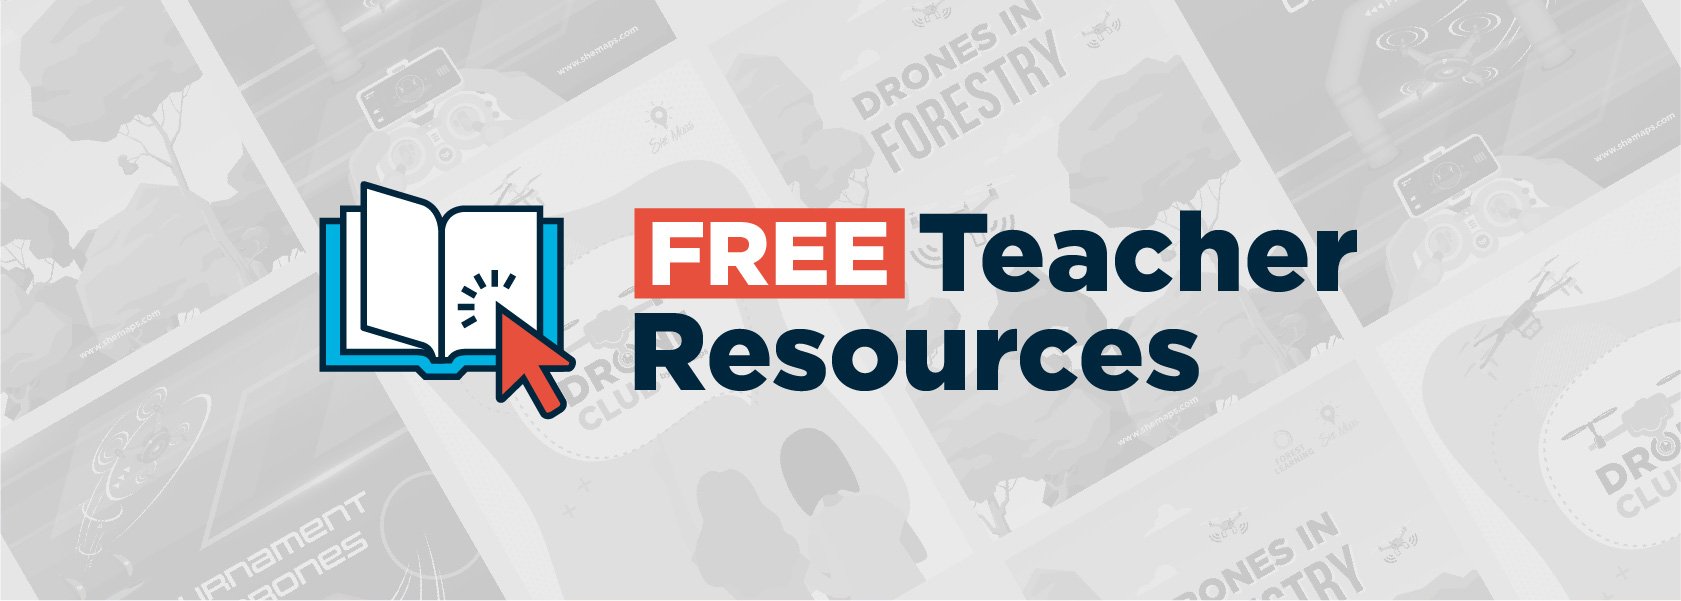 free teacher resources website banner.jpg